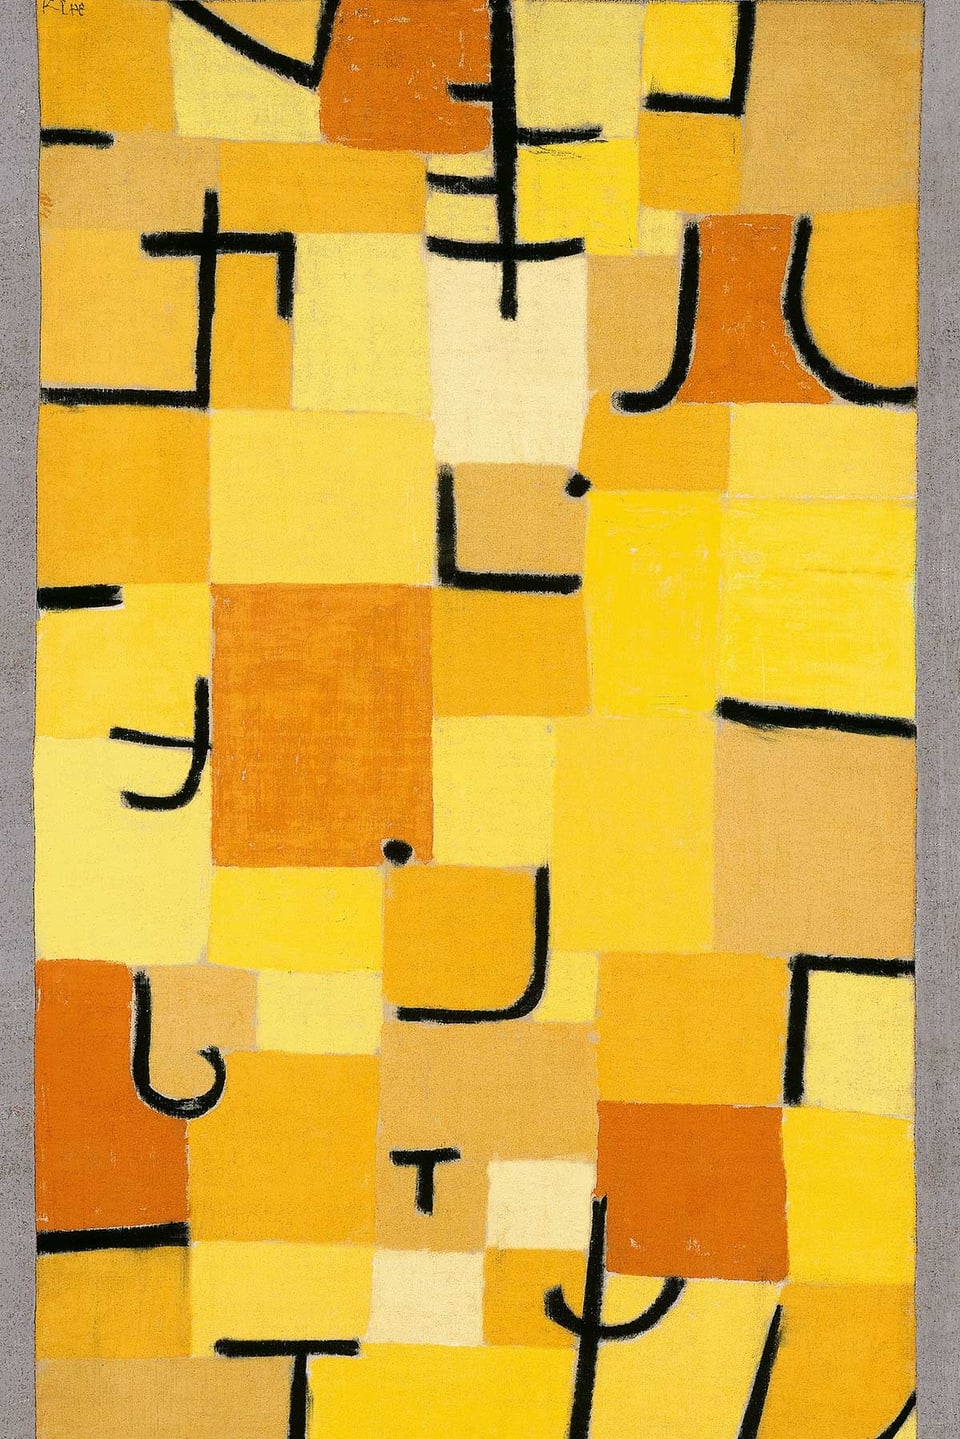 Ein abstraktes Bild von Paul Klee: gelbe Felder mit schwarzen Strichen und Punkten.